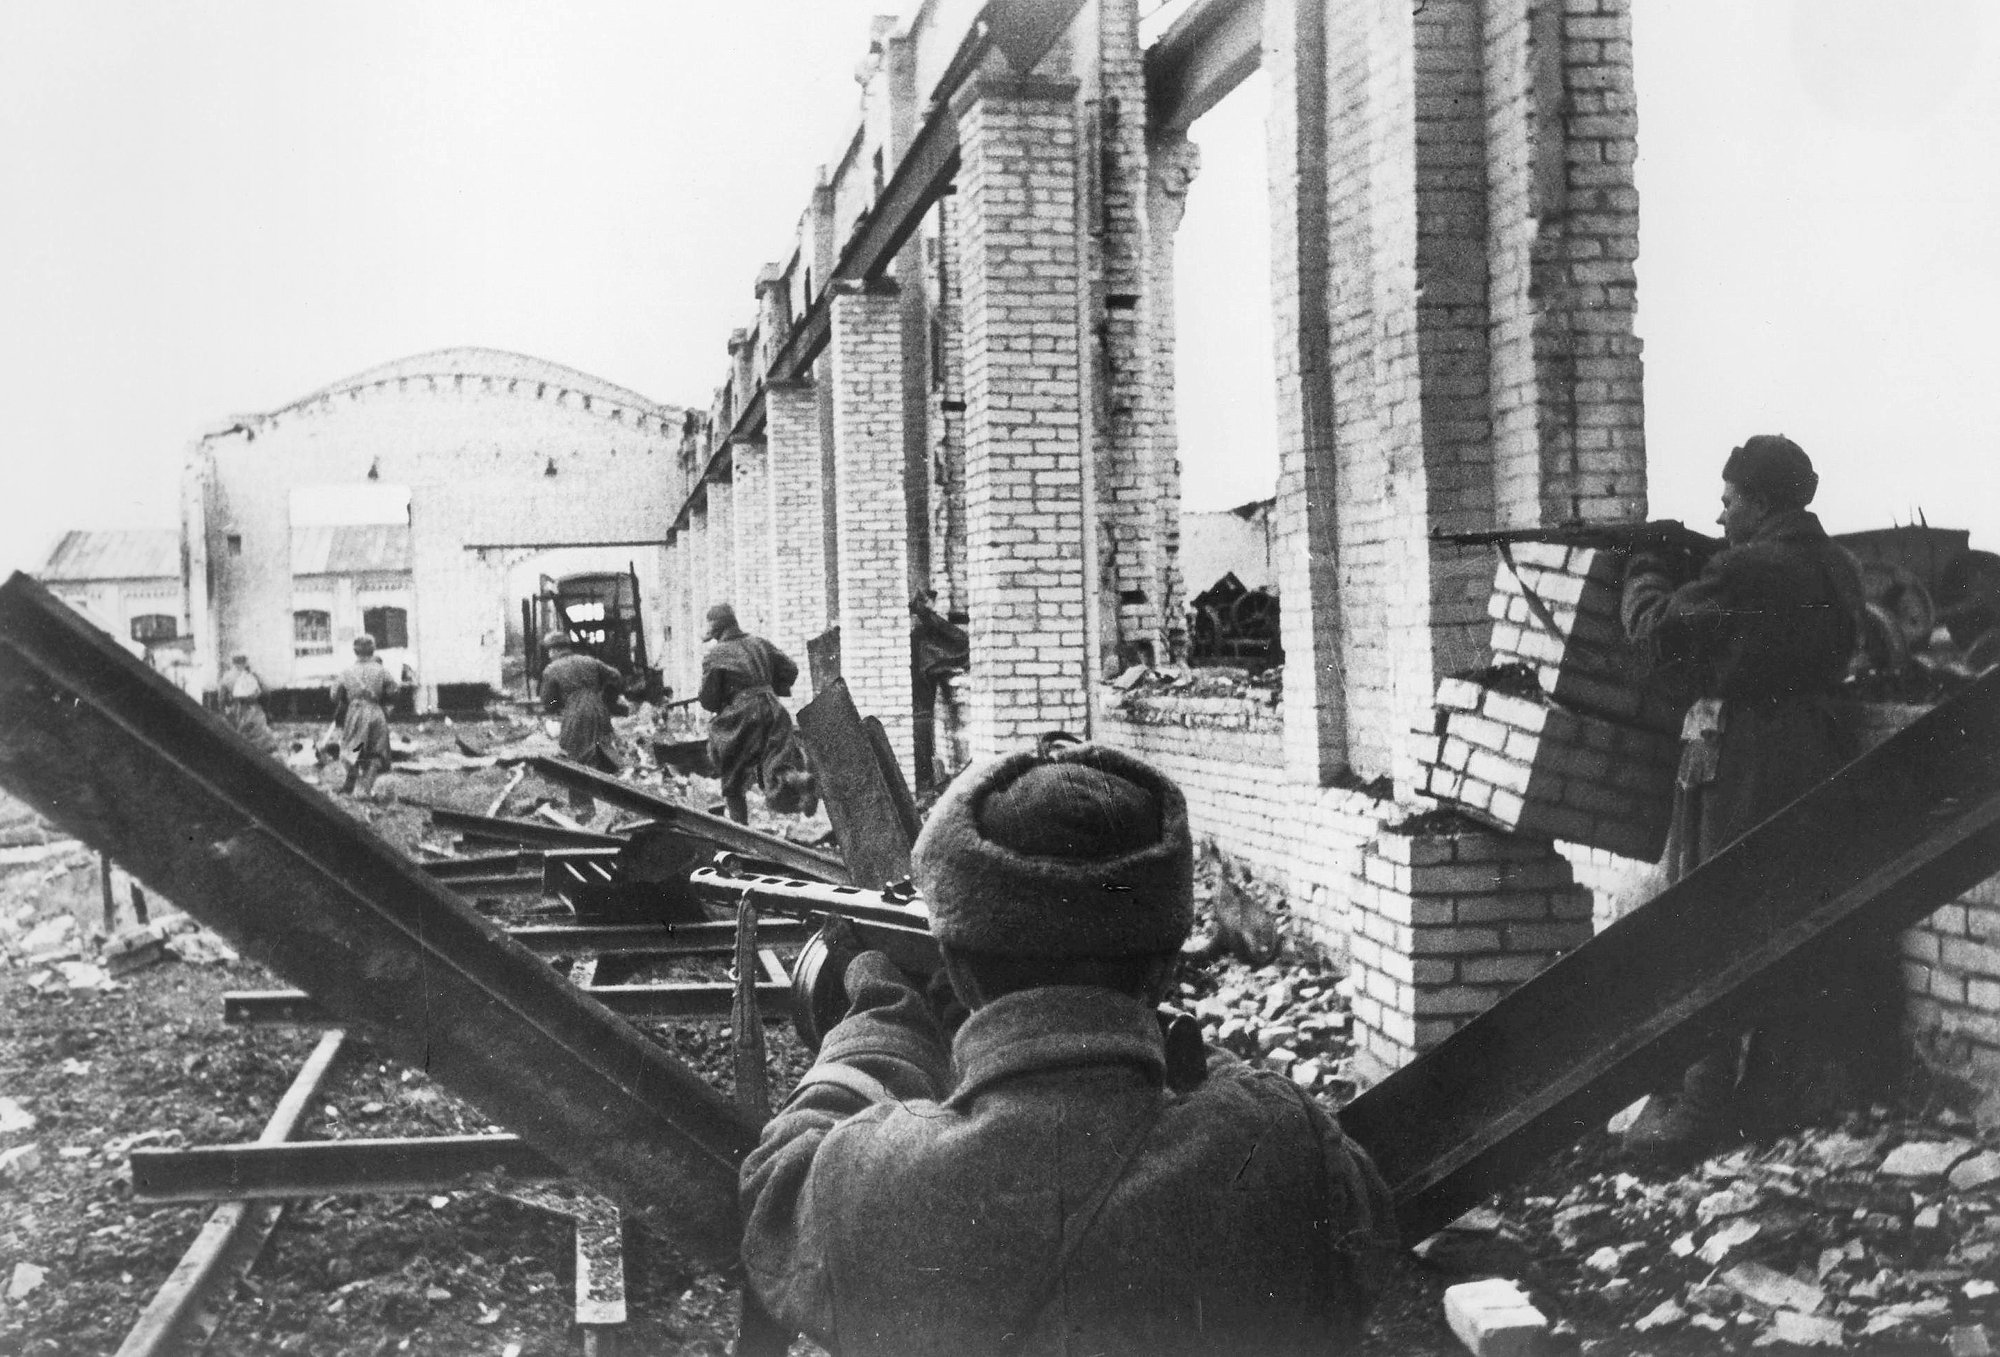 Красноармейцы ведут бой среди развалин разрушенного цеха в Сталинграде. 1942